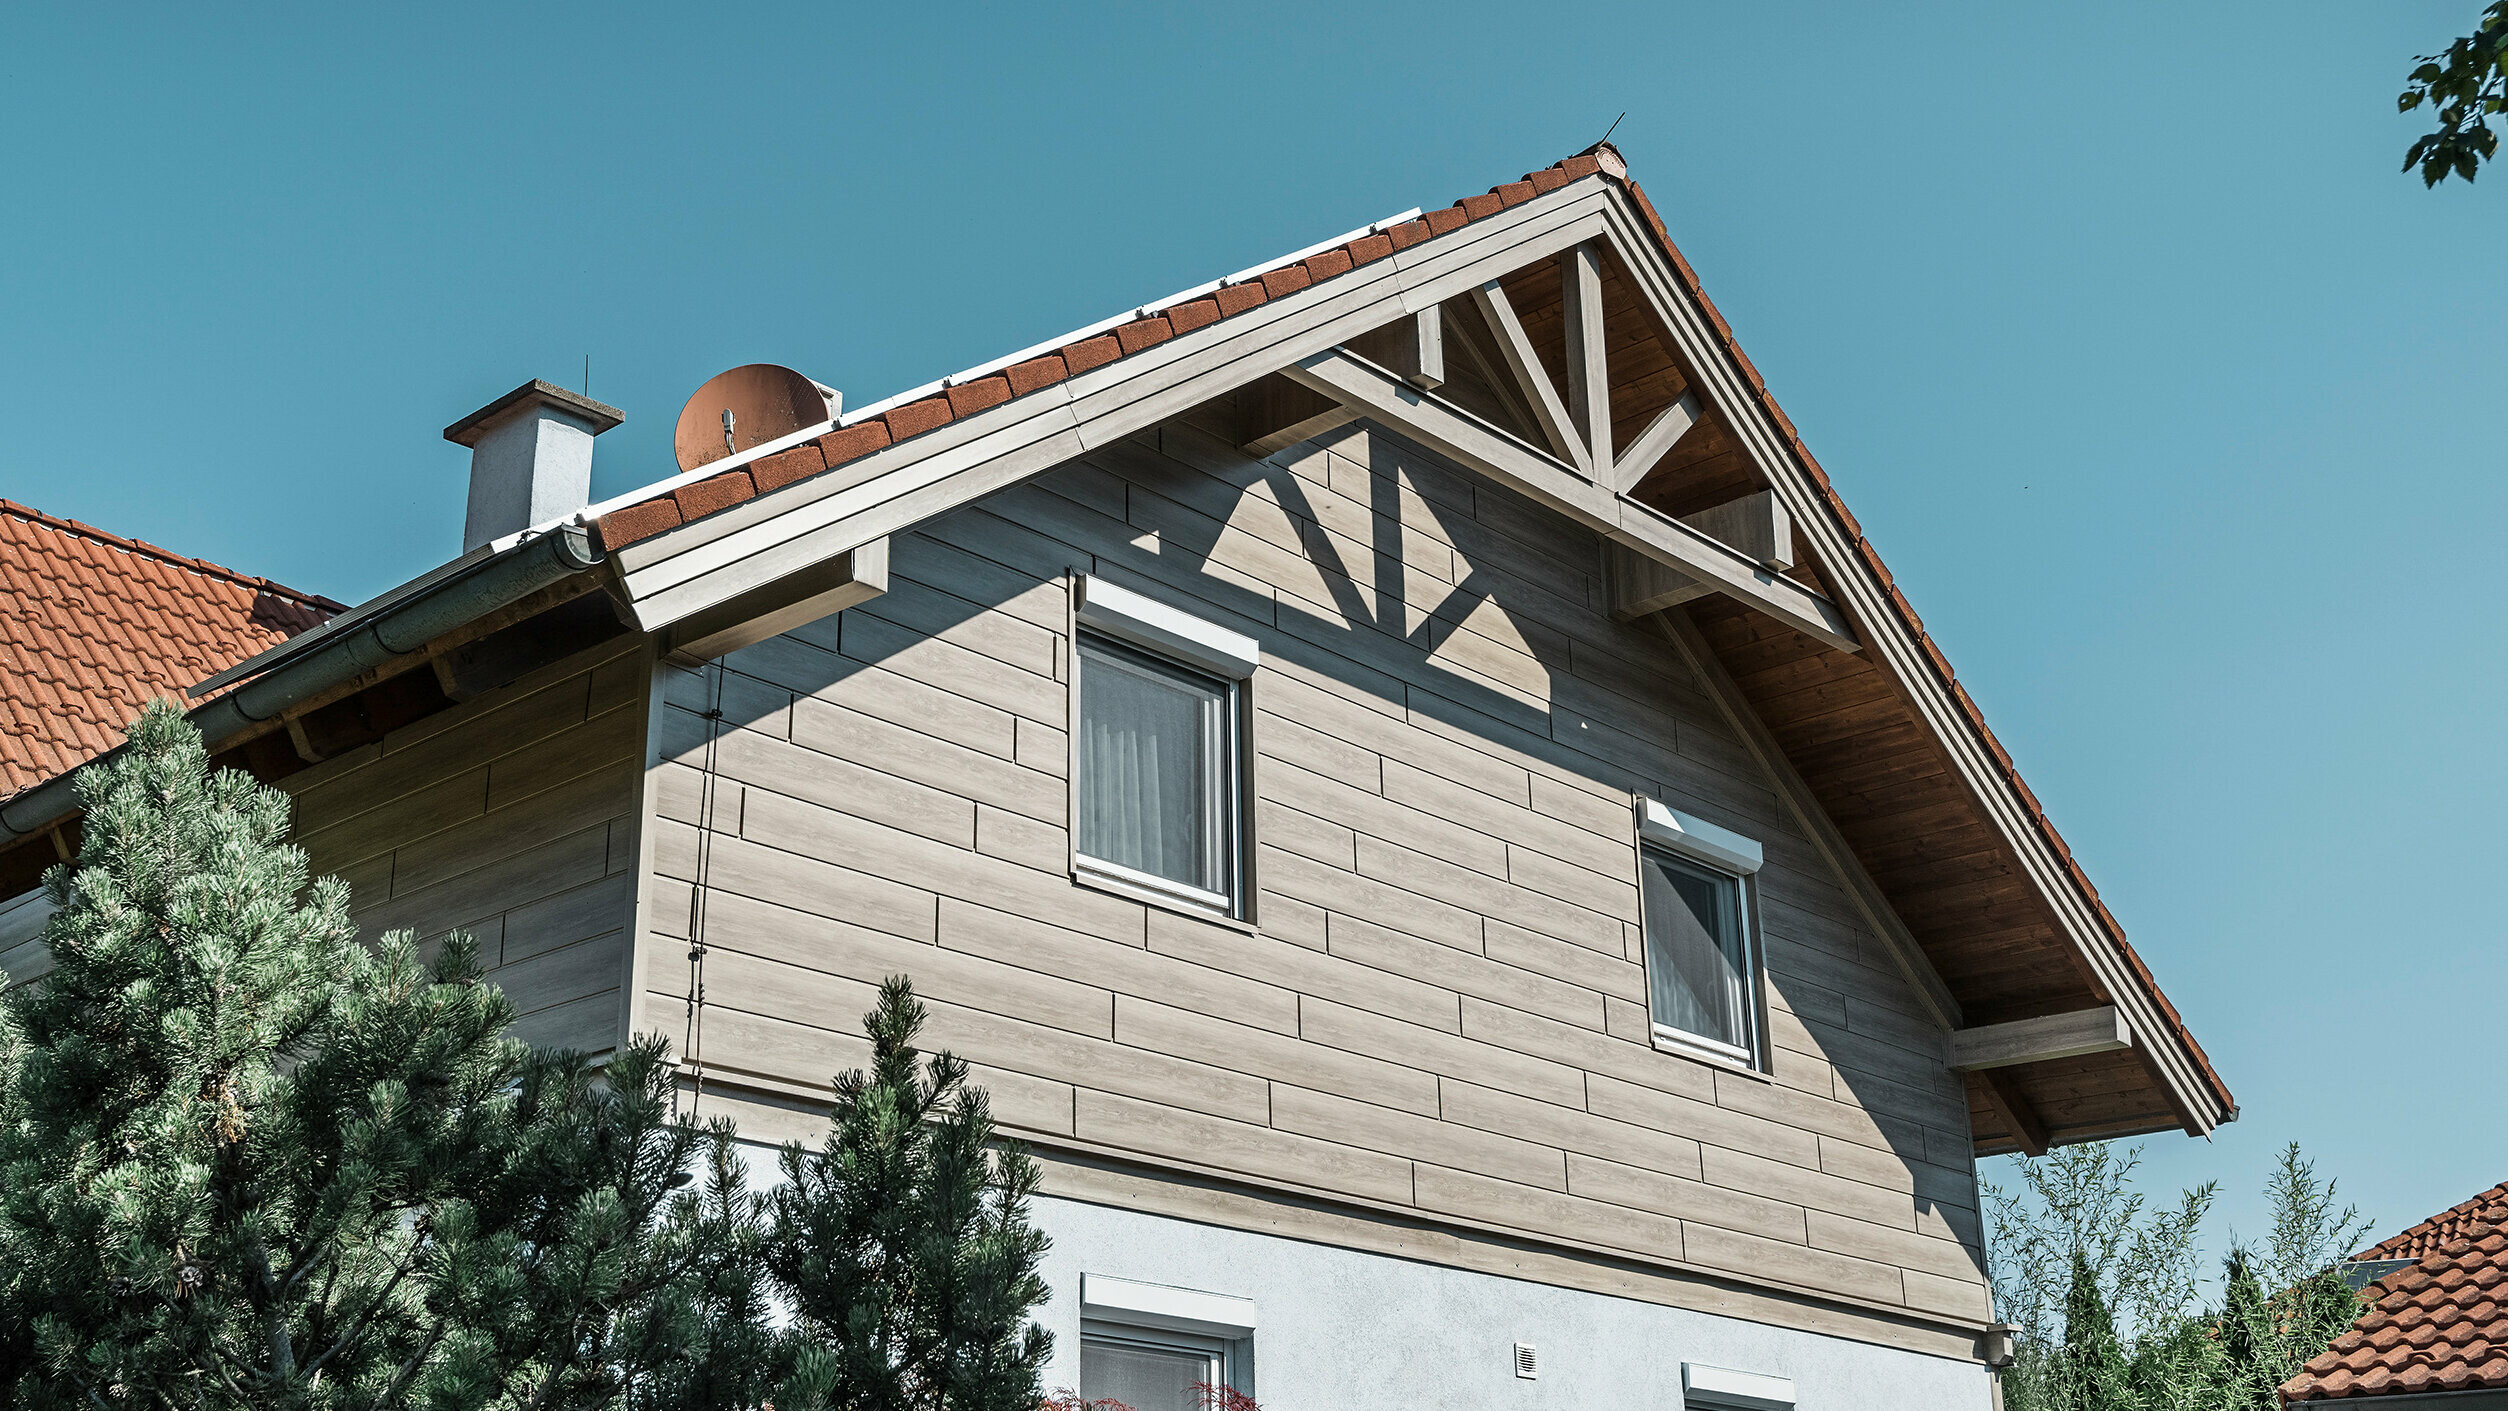 Einfamilienhaus in Landegg aus PREFA Sidings in Beige und Grau. Die verschiedenen Farbtöne der Sidings zeigen die Flexibilität bei der Farbgestaltung und verleihen dem Gebäude eine moderne und stilvolle Optik.